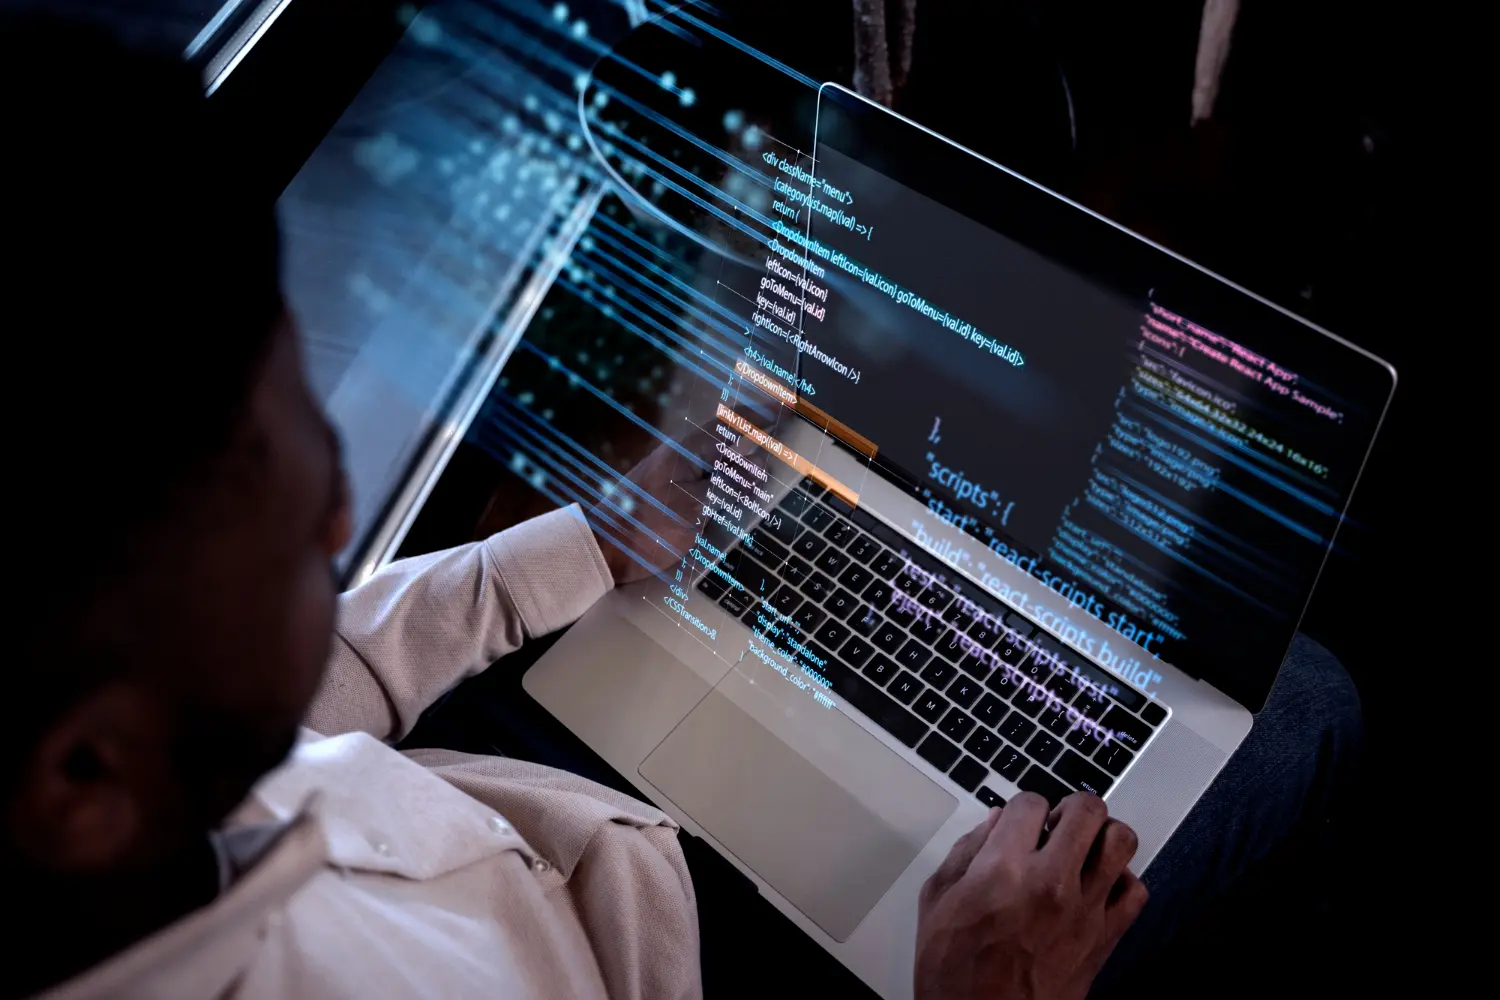 Homem olhando para um notebook, na tela estão códigos de uma linguagem de programação, que simboliza algoritmo do Mercado Livre.